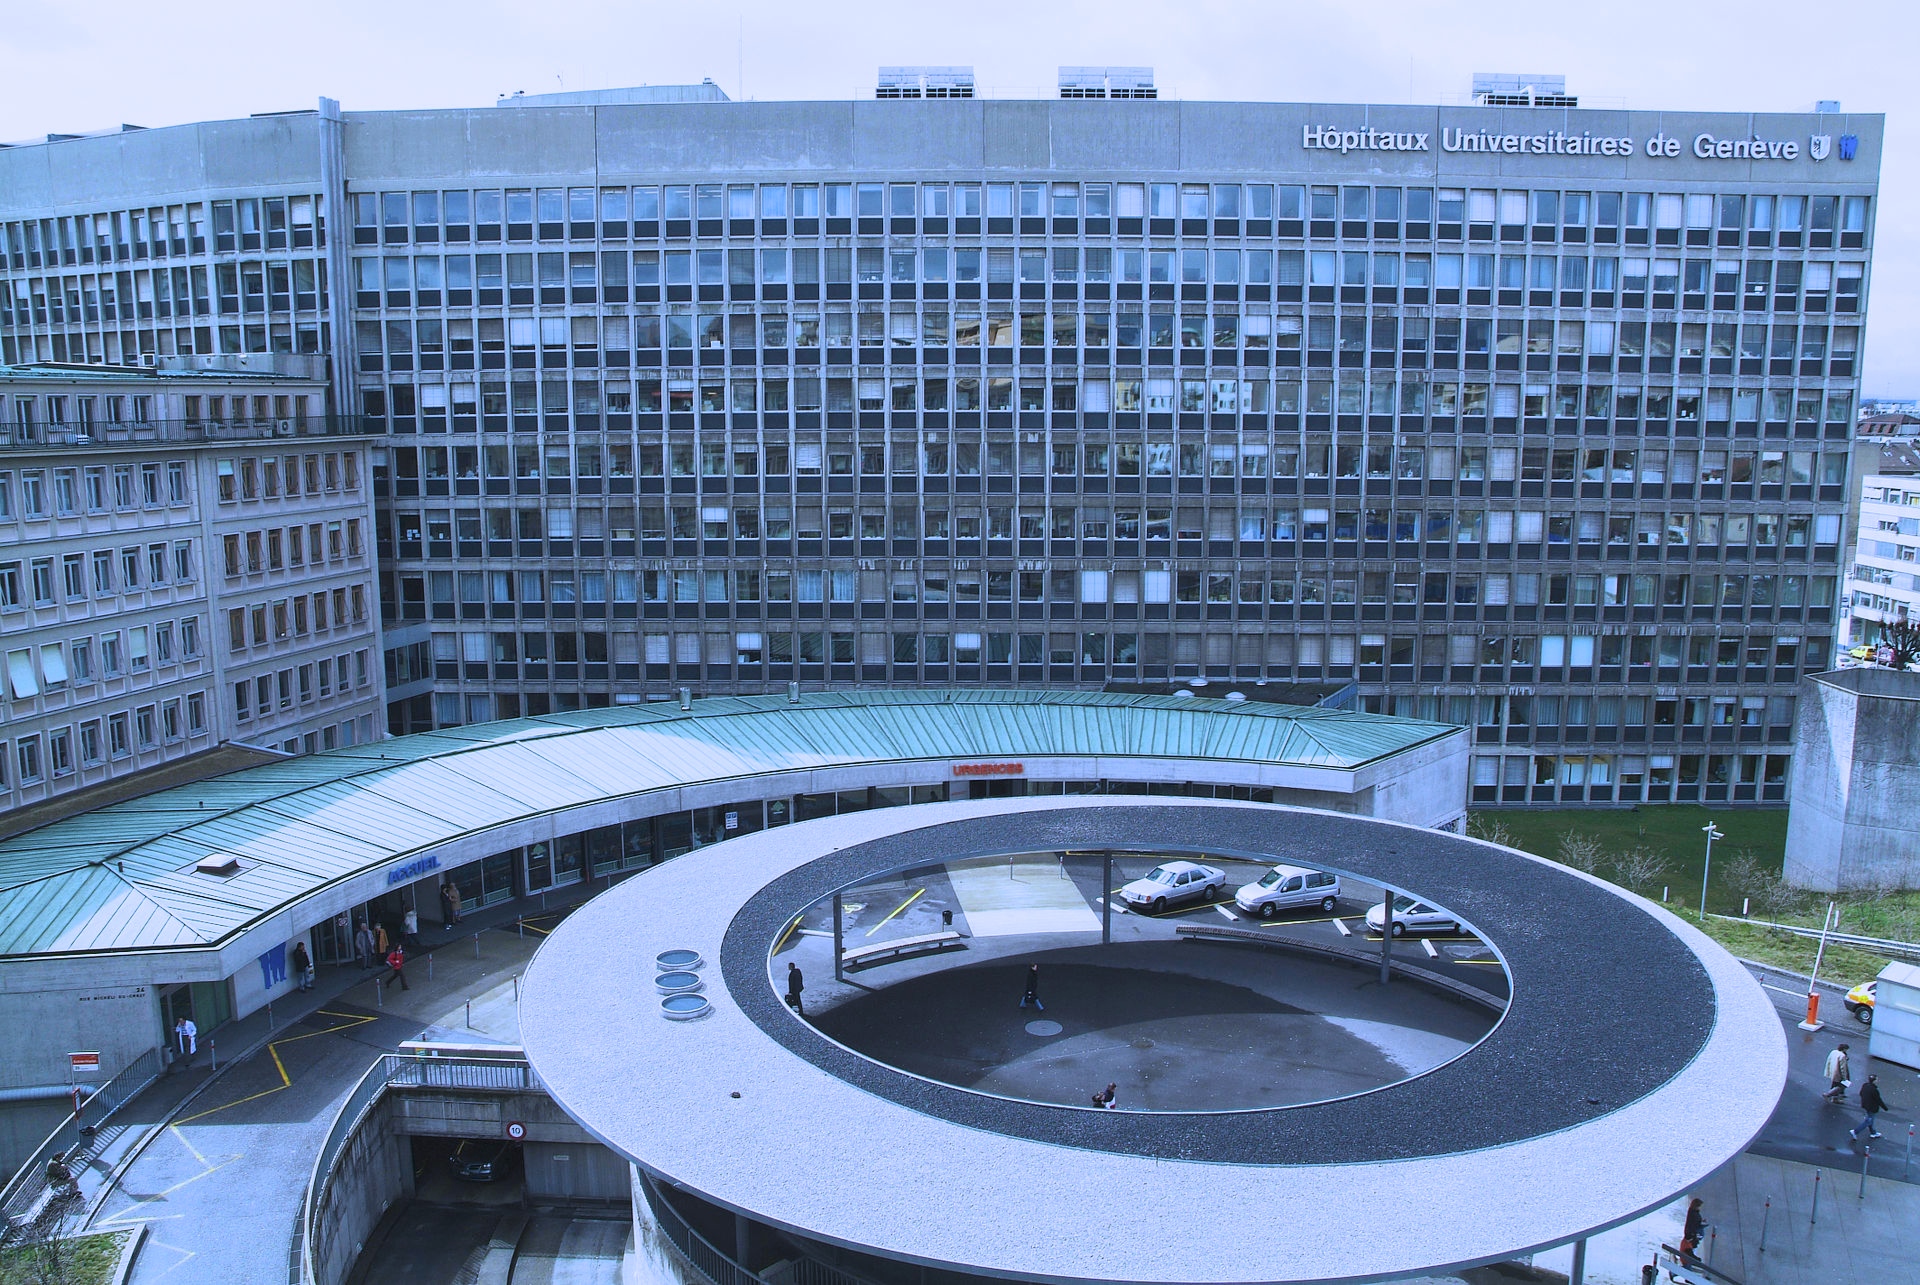 Les_Hôpitaux_Universitaires_de_Genève.JPEG 2